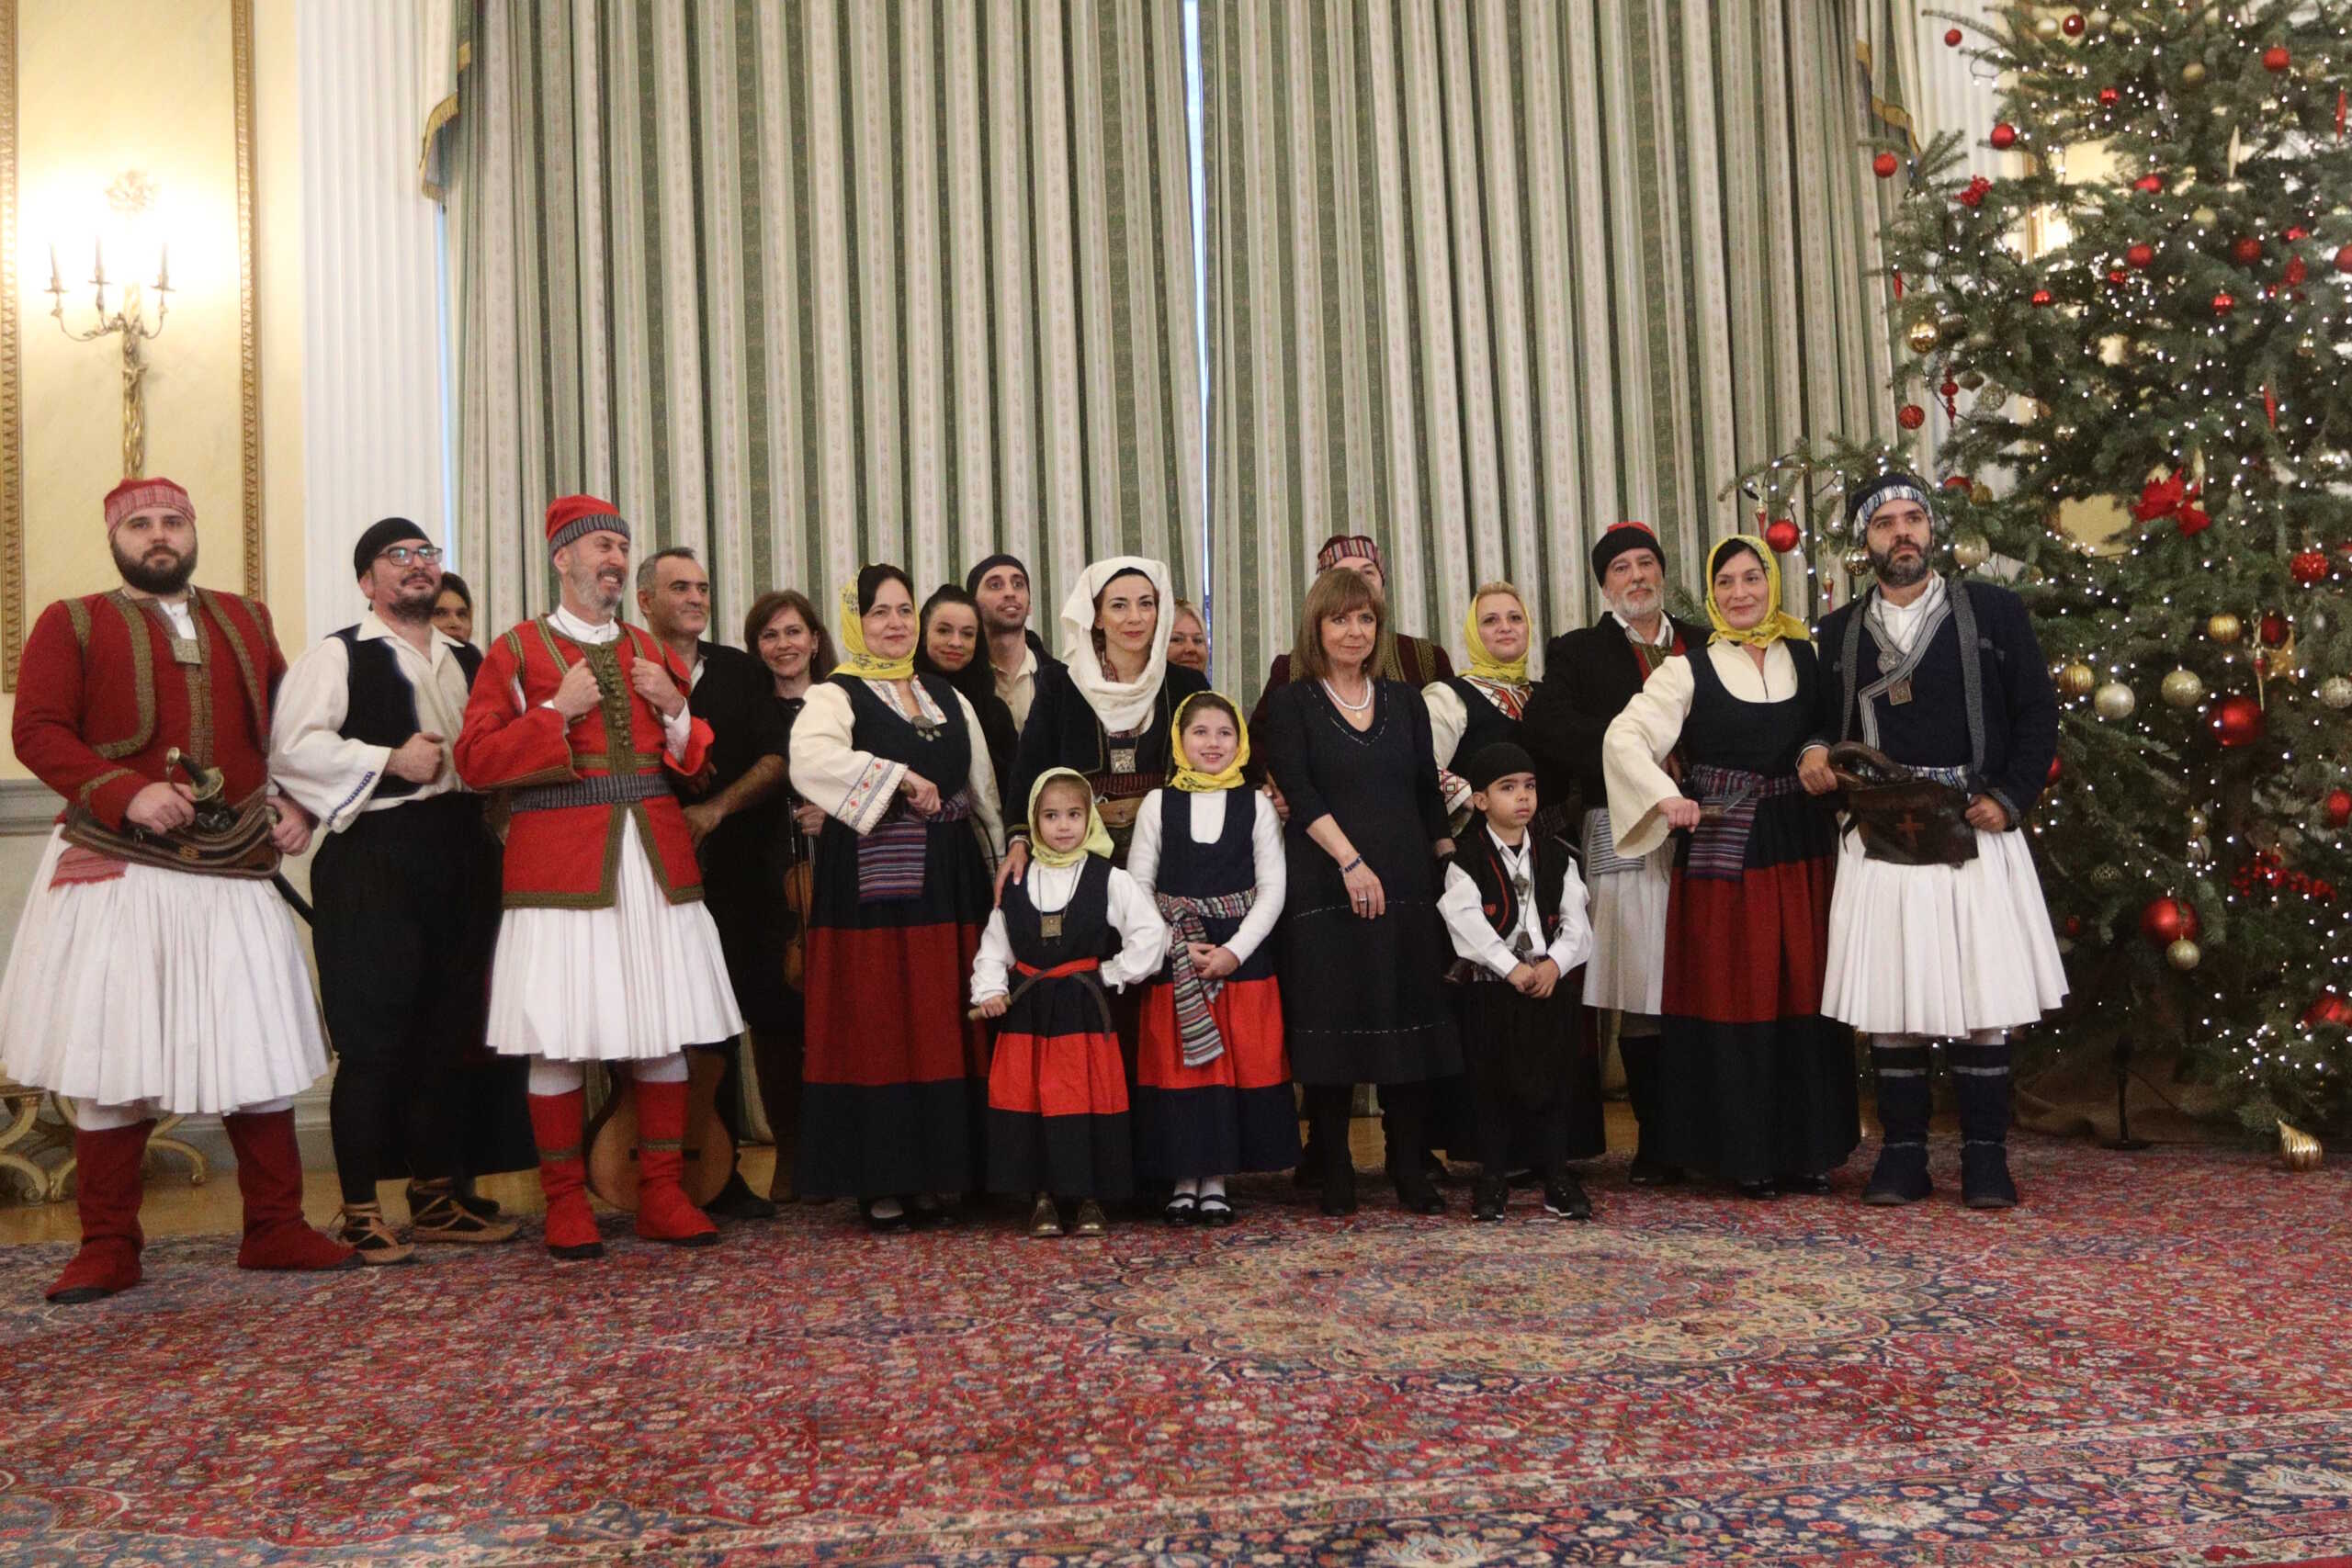 Έψαλλαν τα κάλαντα της Πρωτοχρονιάς στην Κατερίνα Σακελλαροπούλου – Εικόνες από το Προεδρικό Μέγαρο